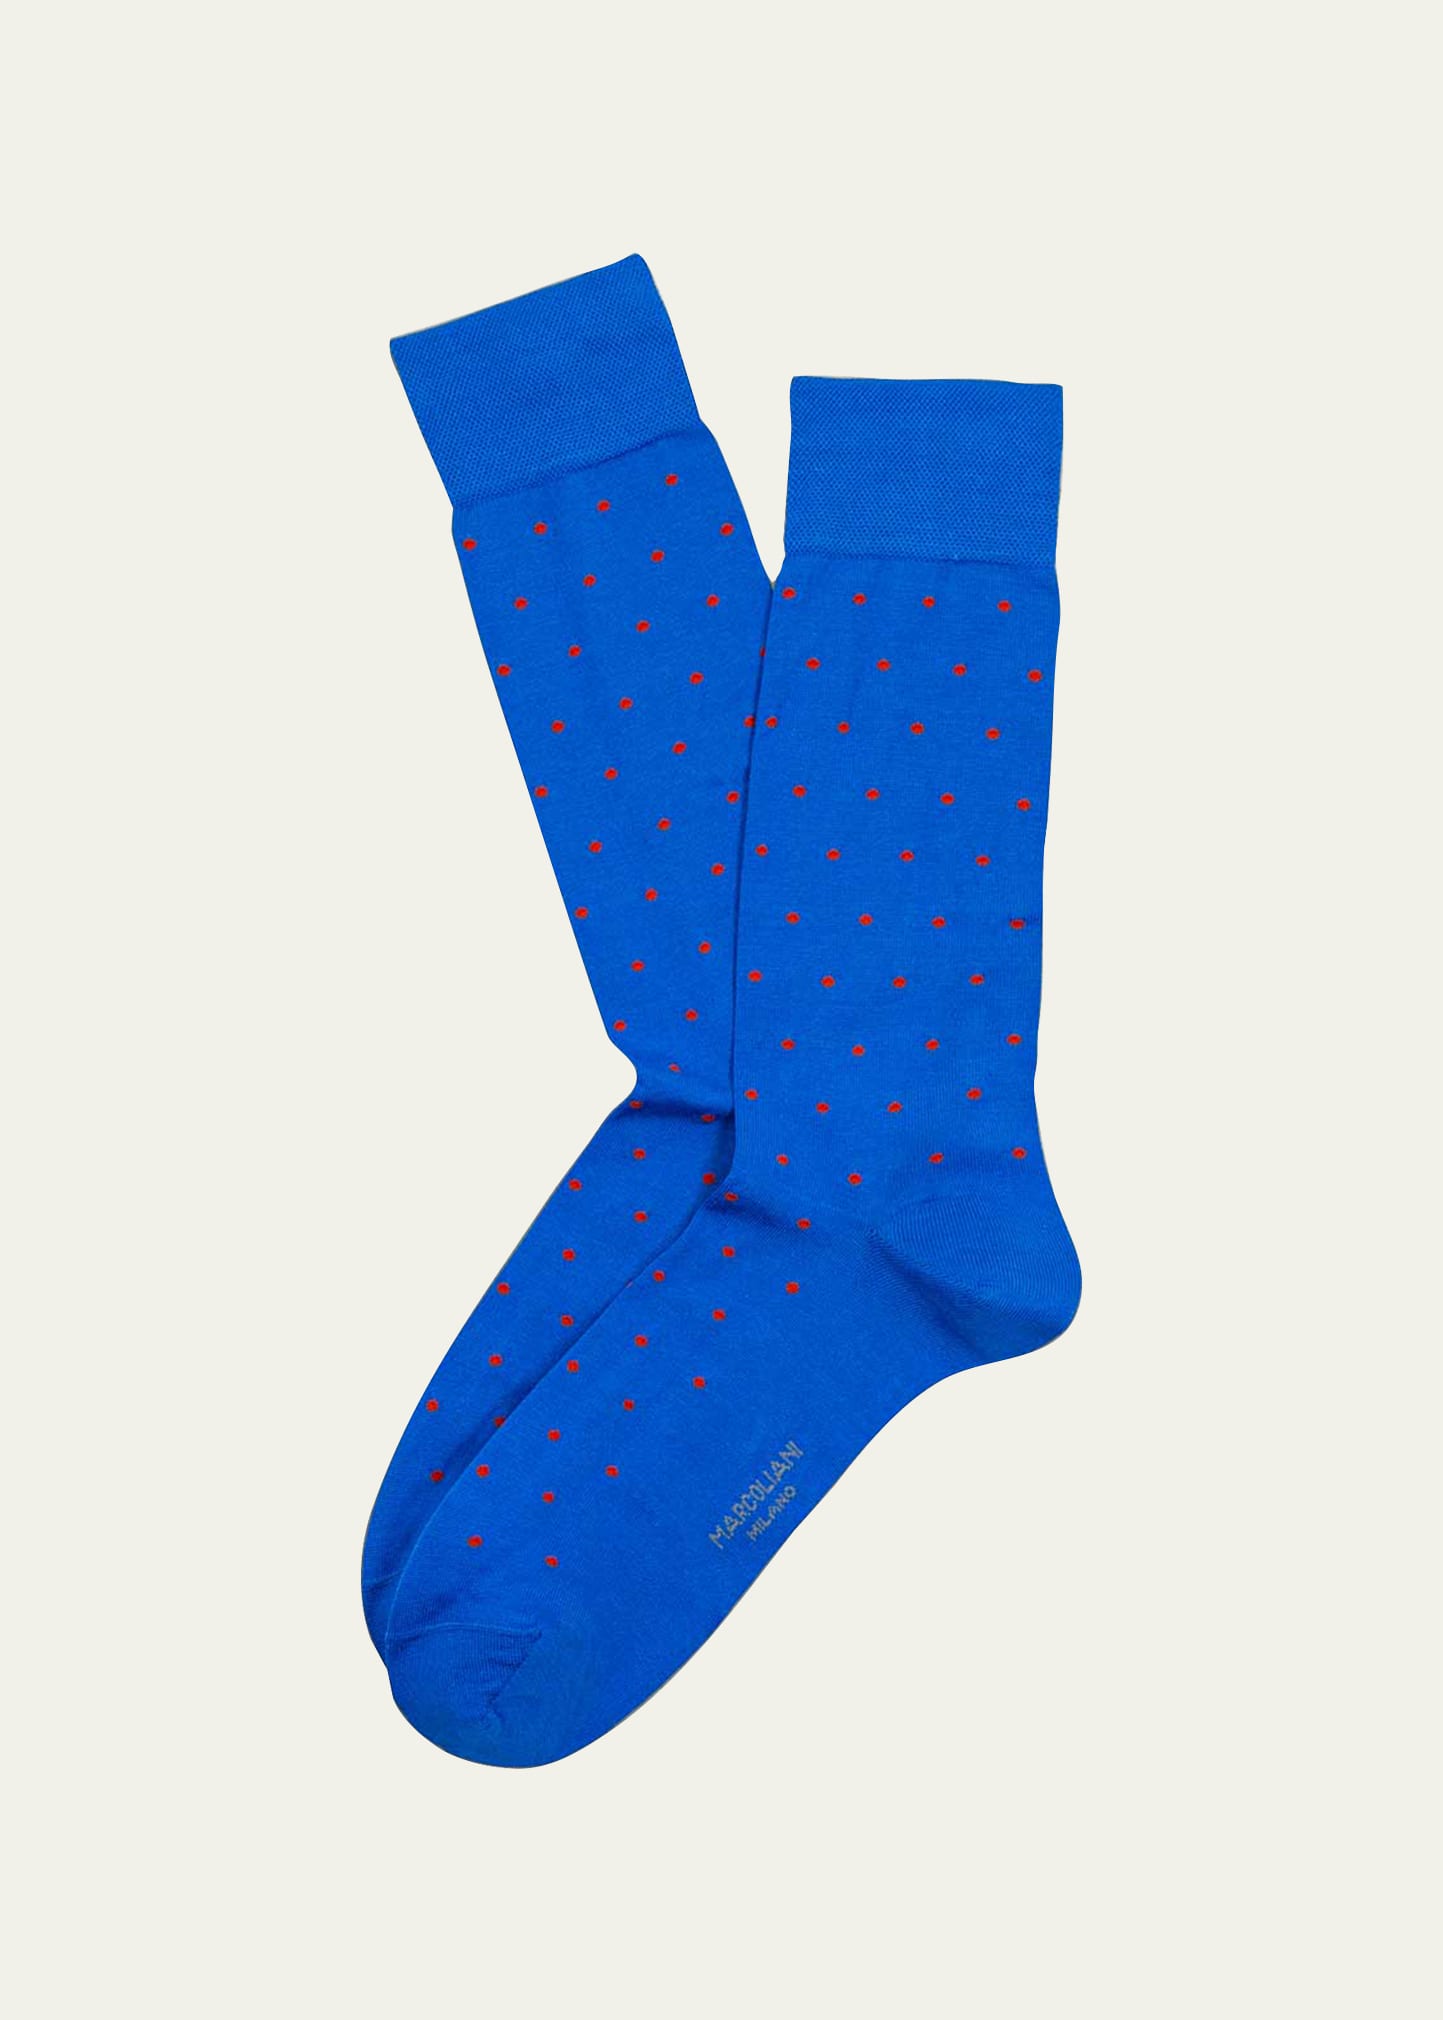 Marcoliani Men's Polka Dot Socks